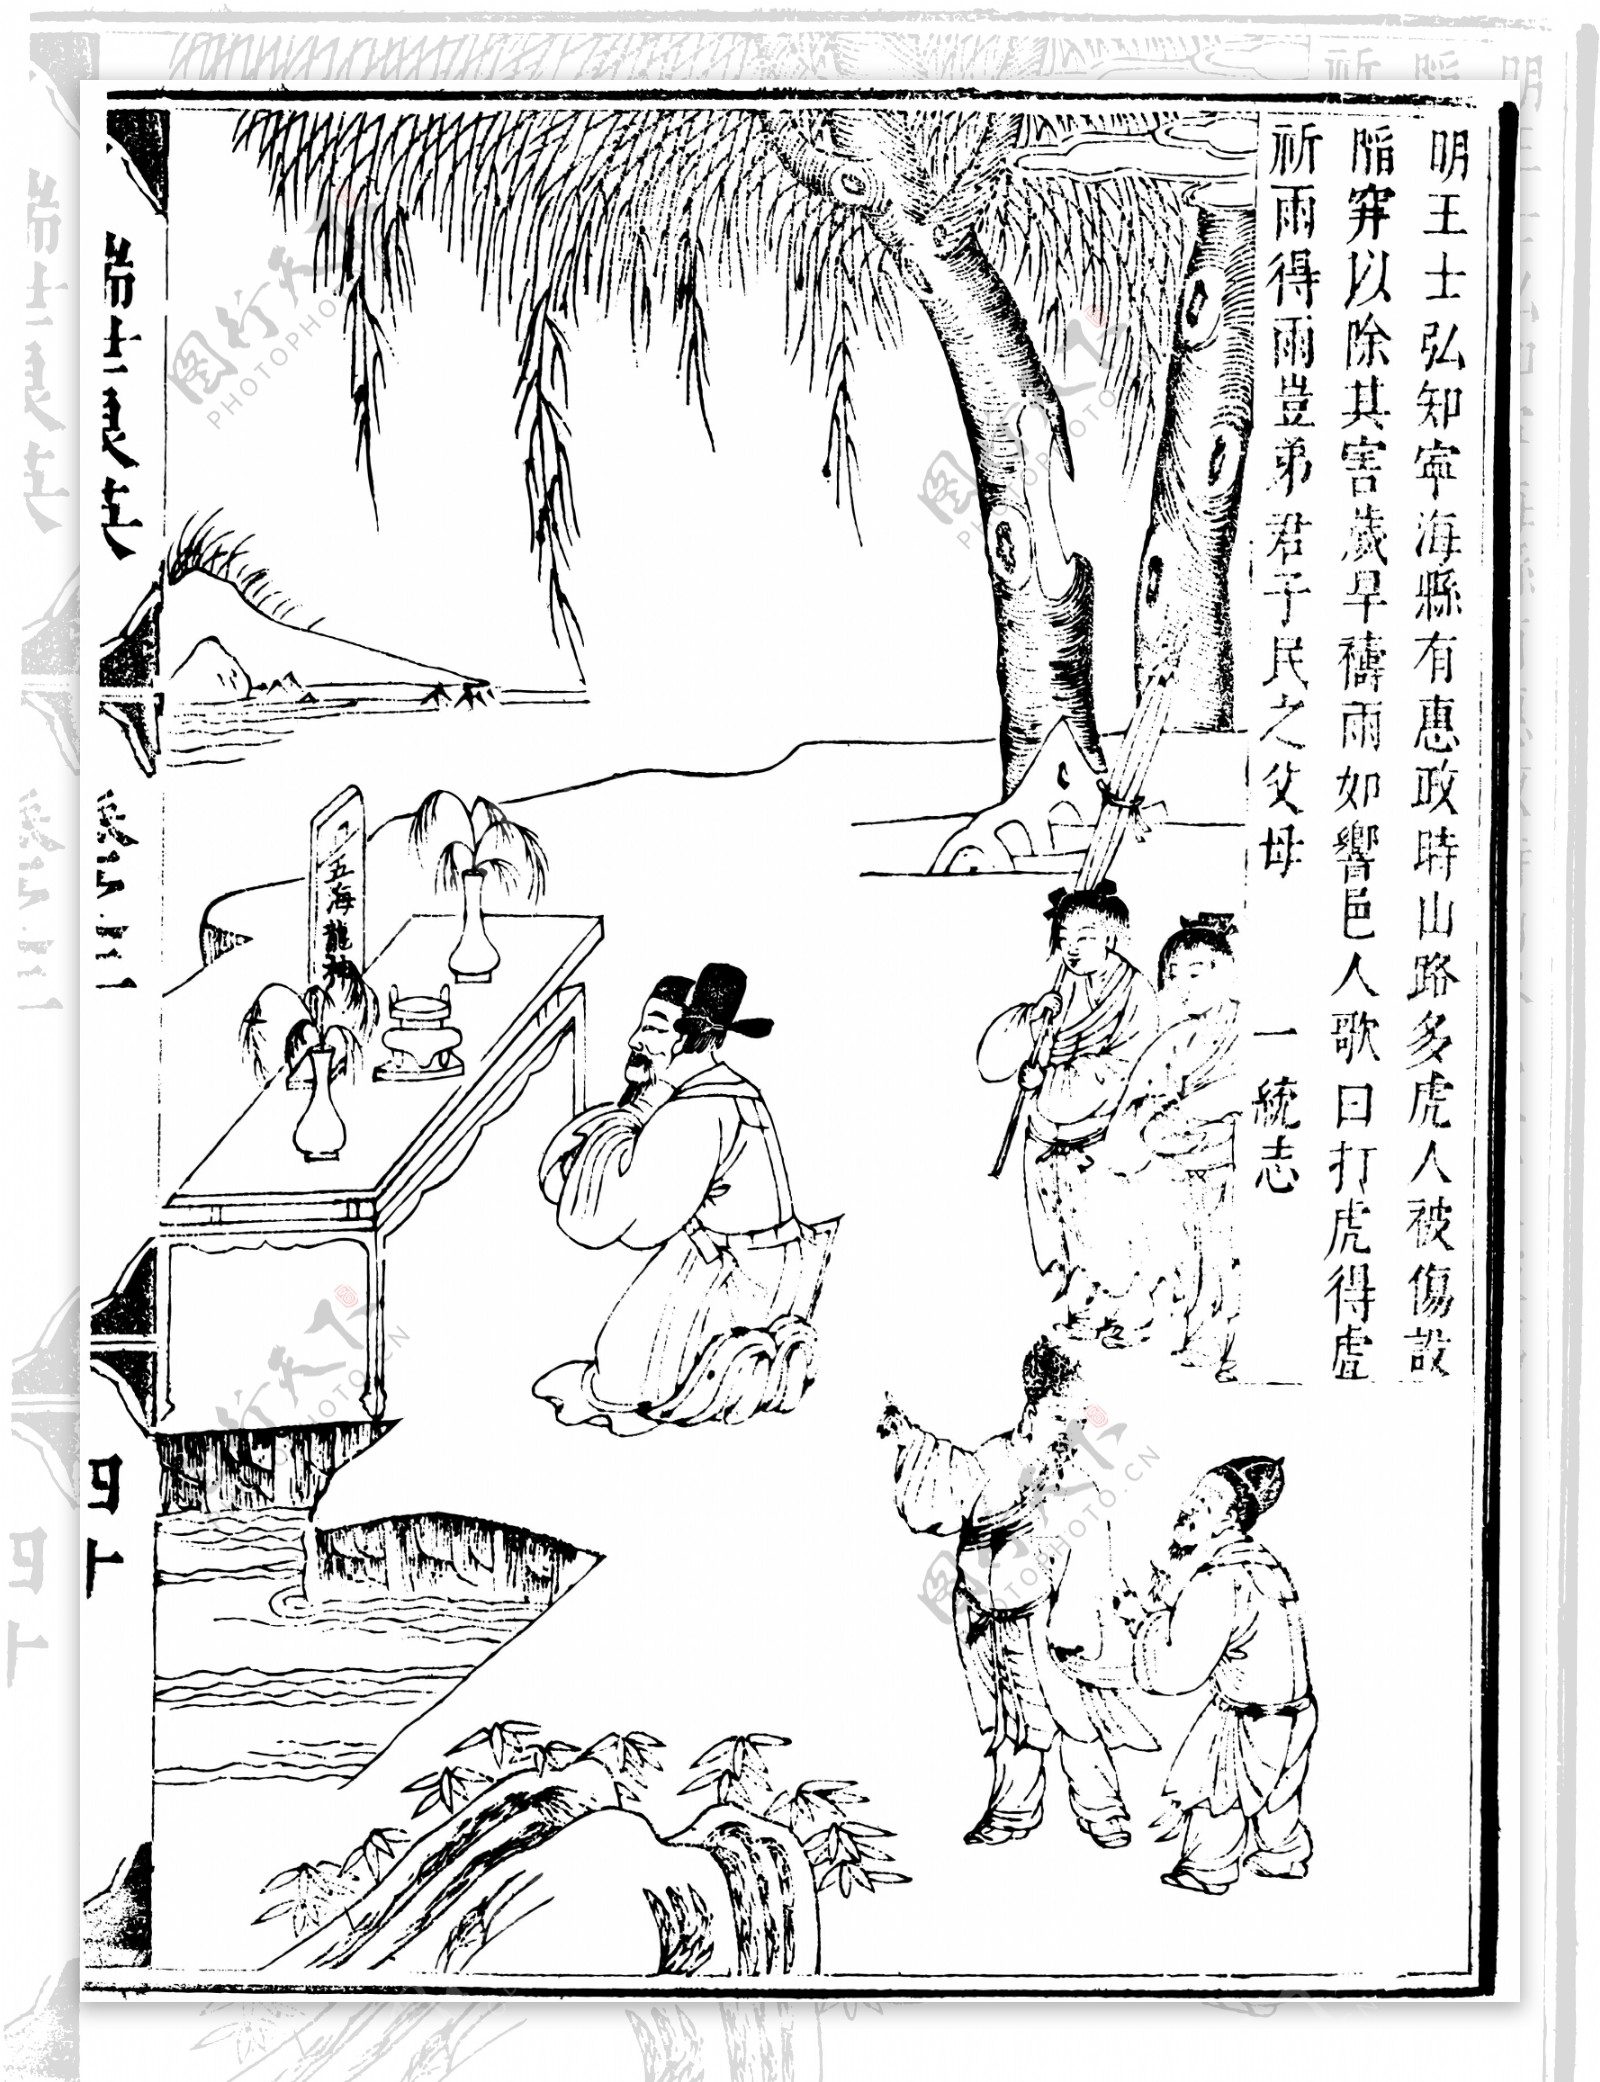 瑞世良英木刻版画中国传统文化14